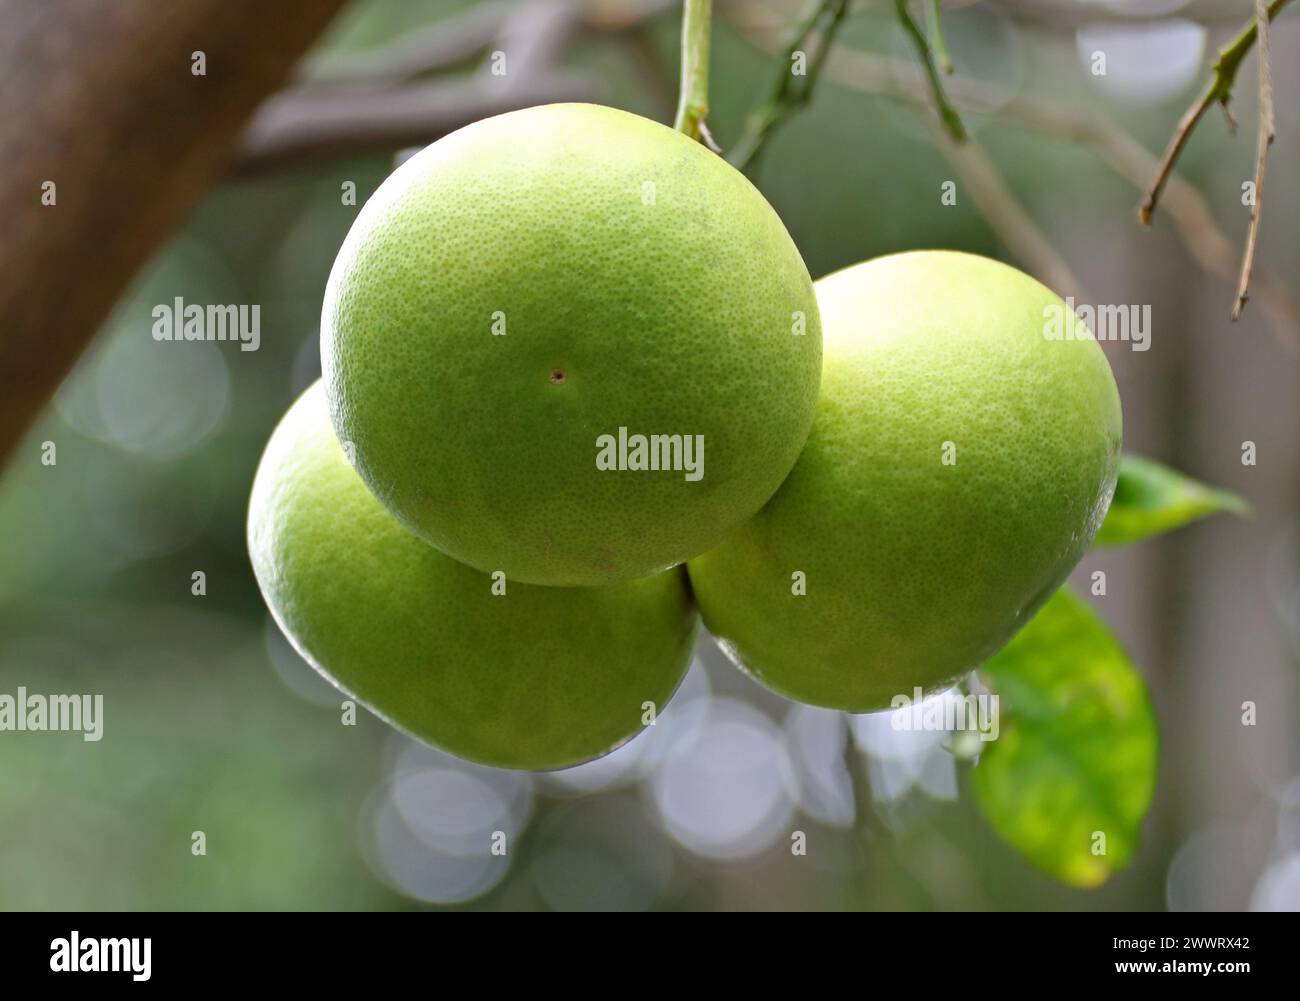 Pompelmo, Citrus x paradisi, Rutaceae. Il pompelmo (Citrus x paradisi) è un albero di agrumi subtropicale noto per i suoi frutti relativamente grandi. Foto Stock